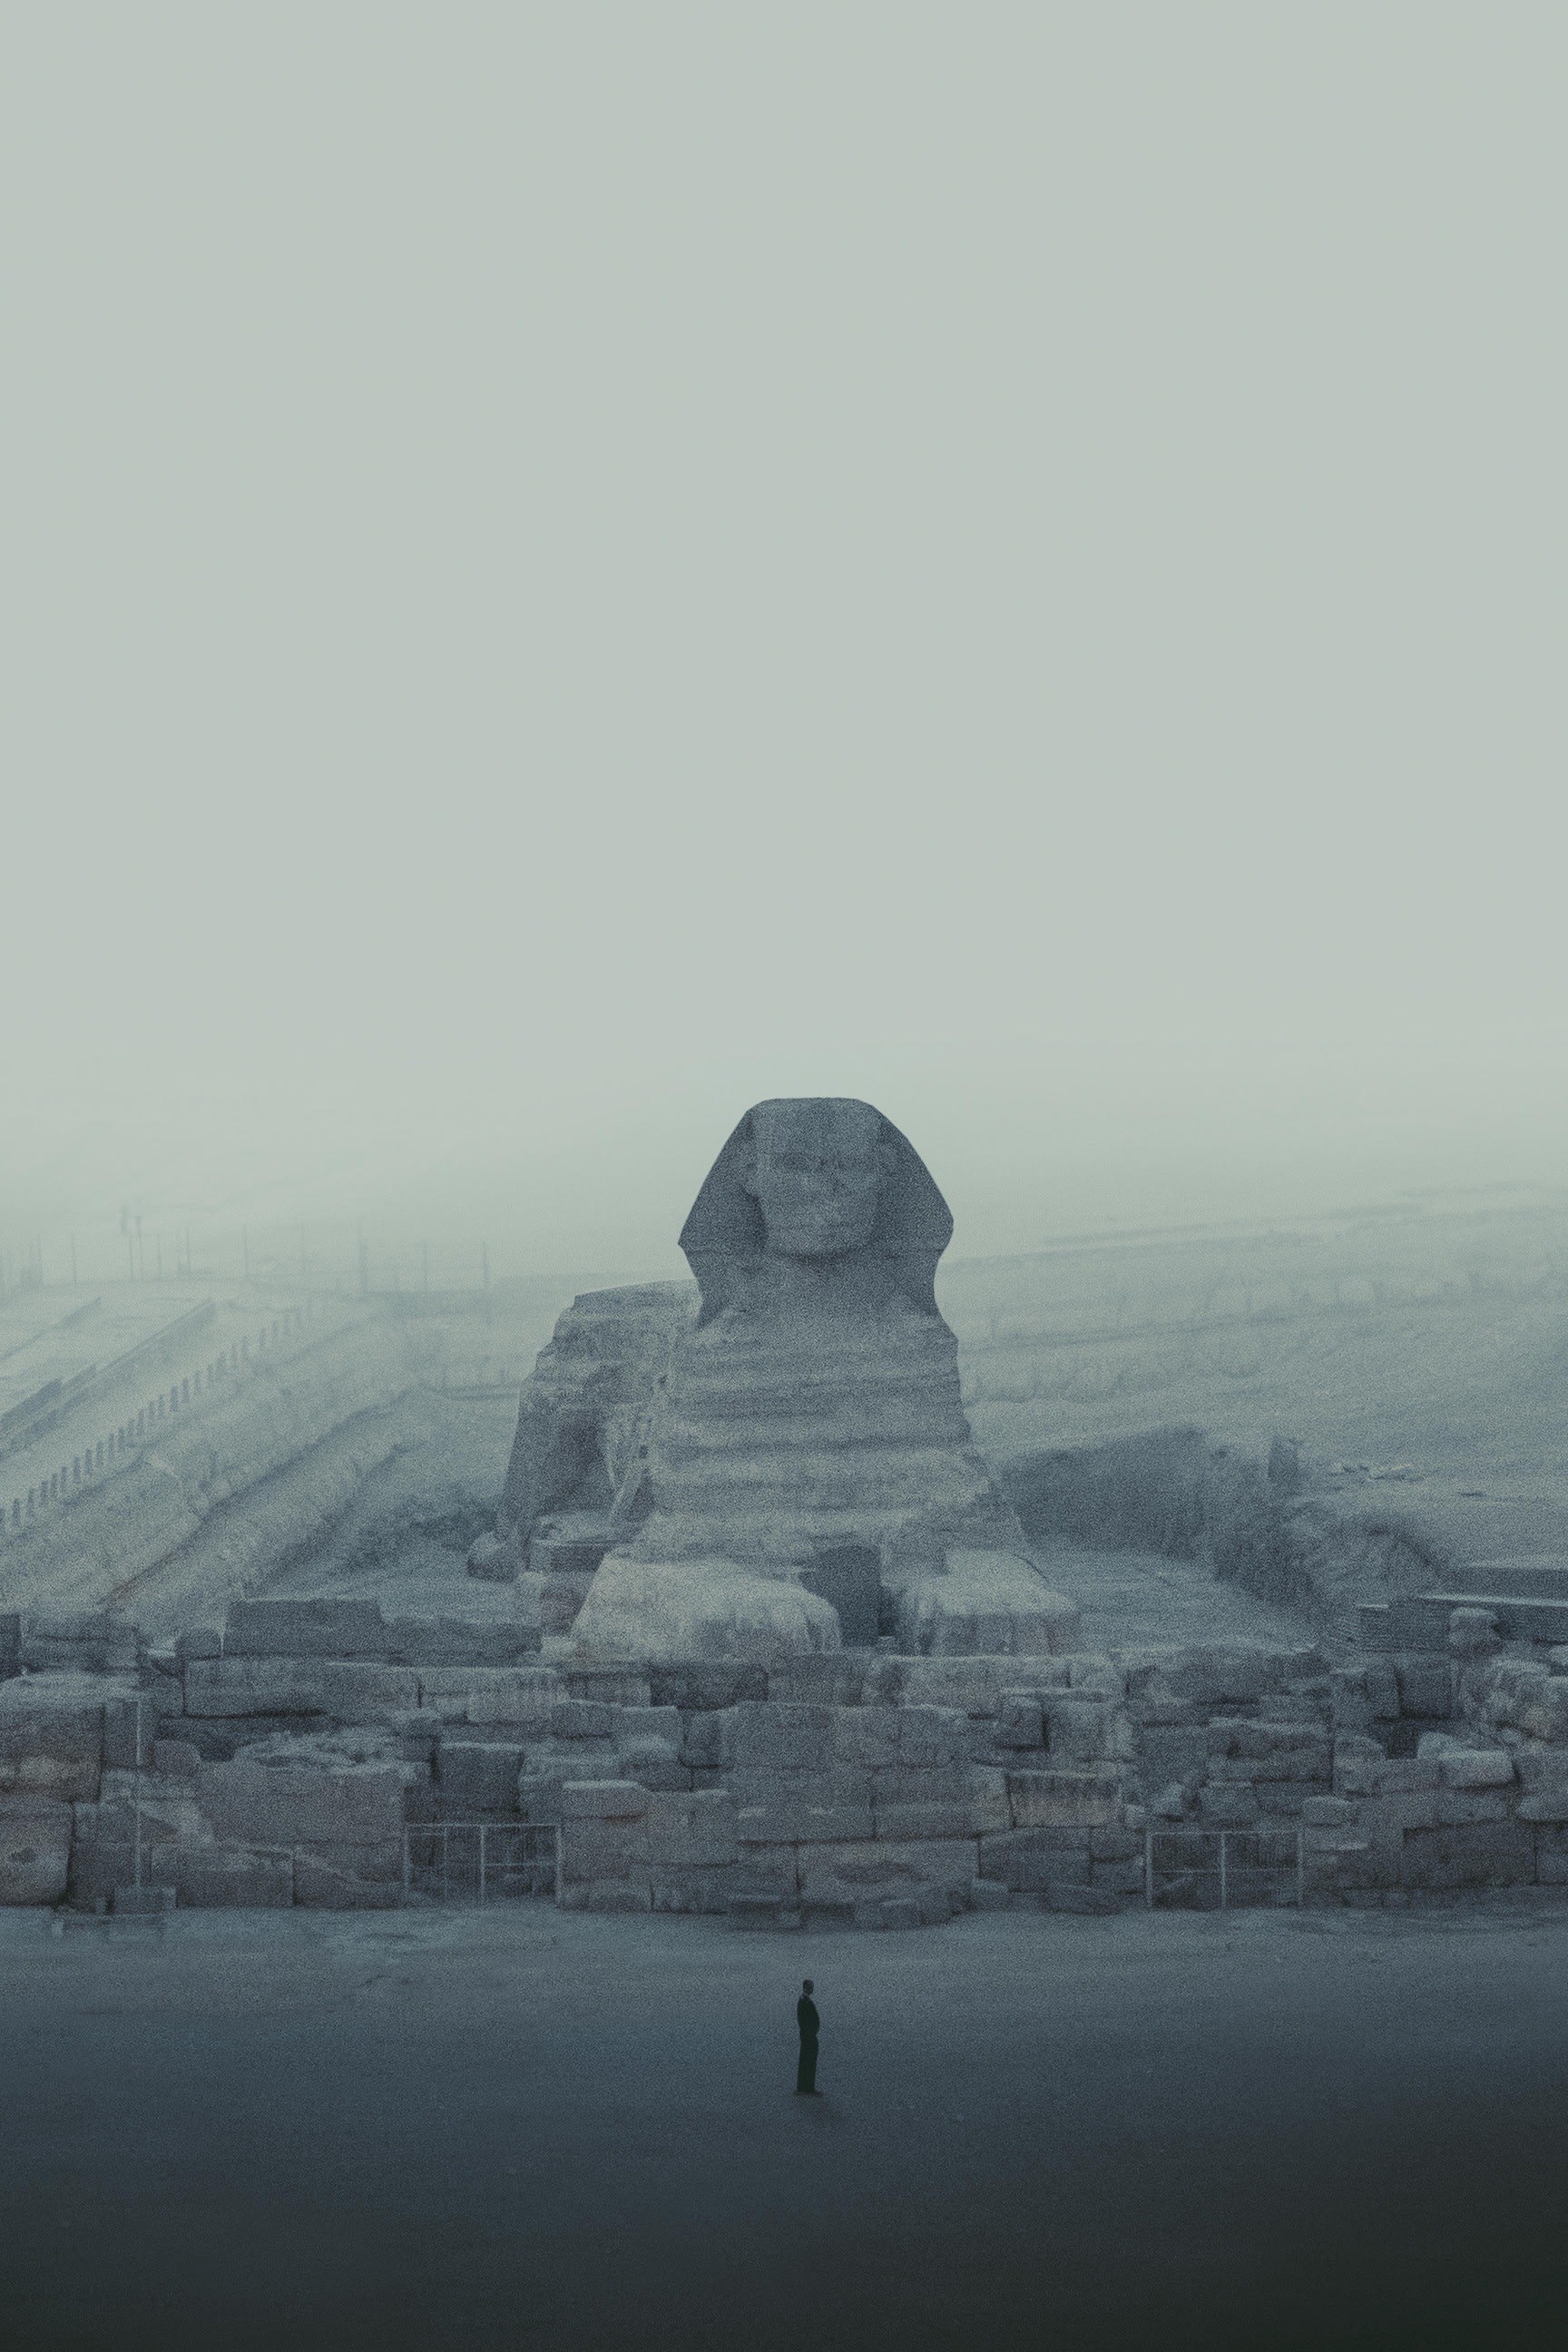 مصور يرصد العزلة الصامتة لأهرامات مصر وصحاريها